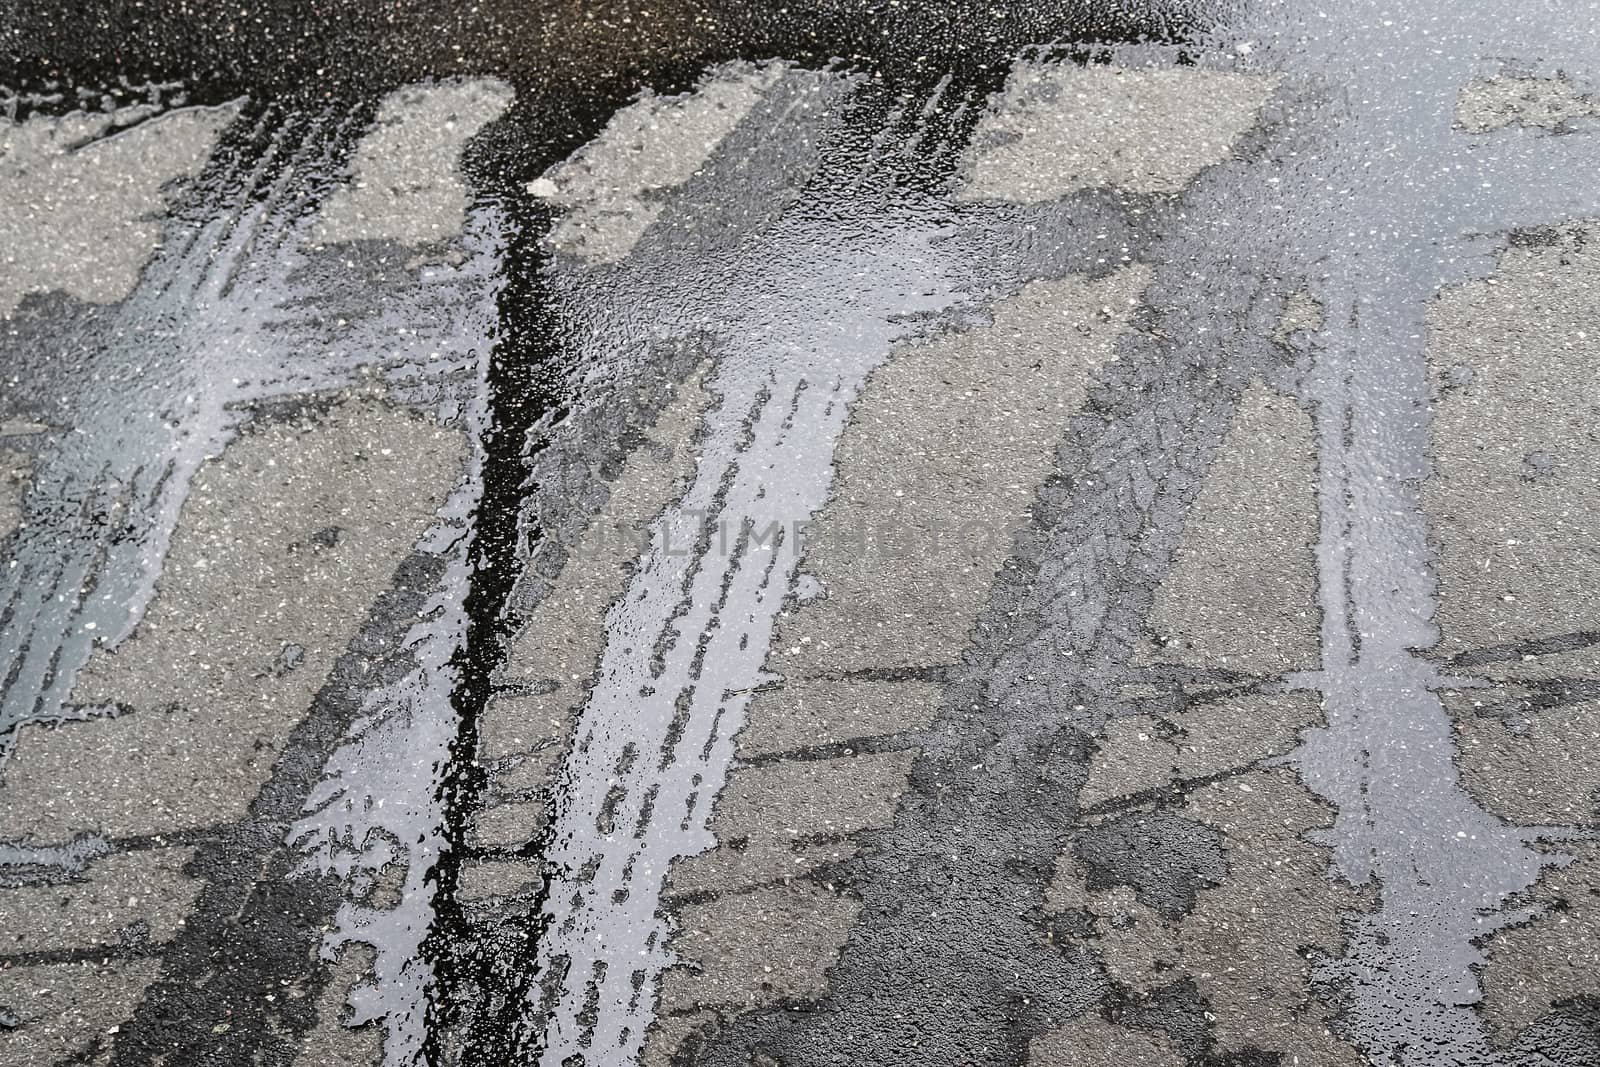 Wet ashpalt road texture. Heavy rain drops falling on city stree by MP_foto71